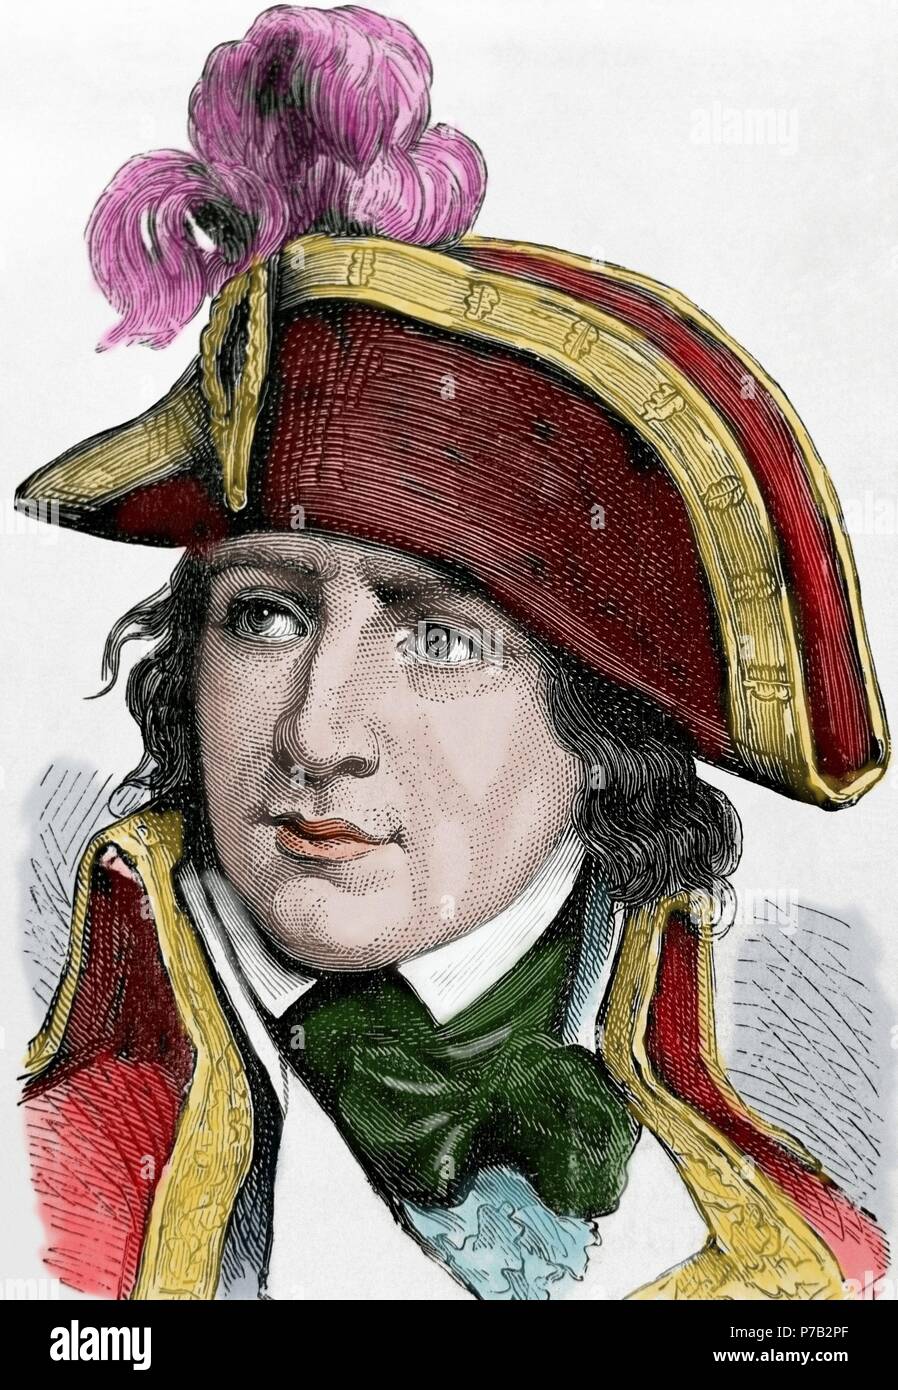 Jean-Charles Pichegru (1761-1804). Französischer General der Revolutionskriege. Gravur. Porträt. des 19. Jahrhunderts. Farbige. Stockfoto